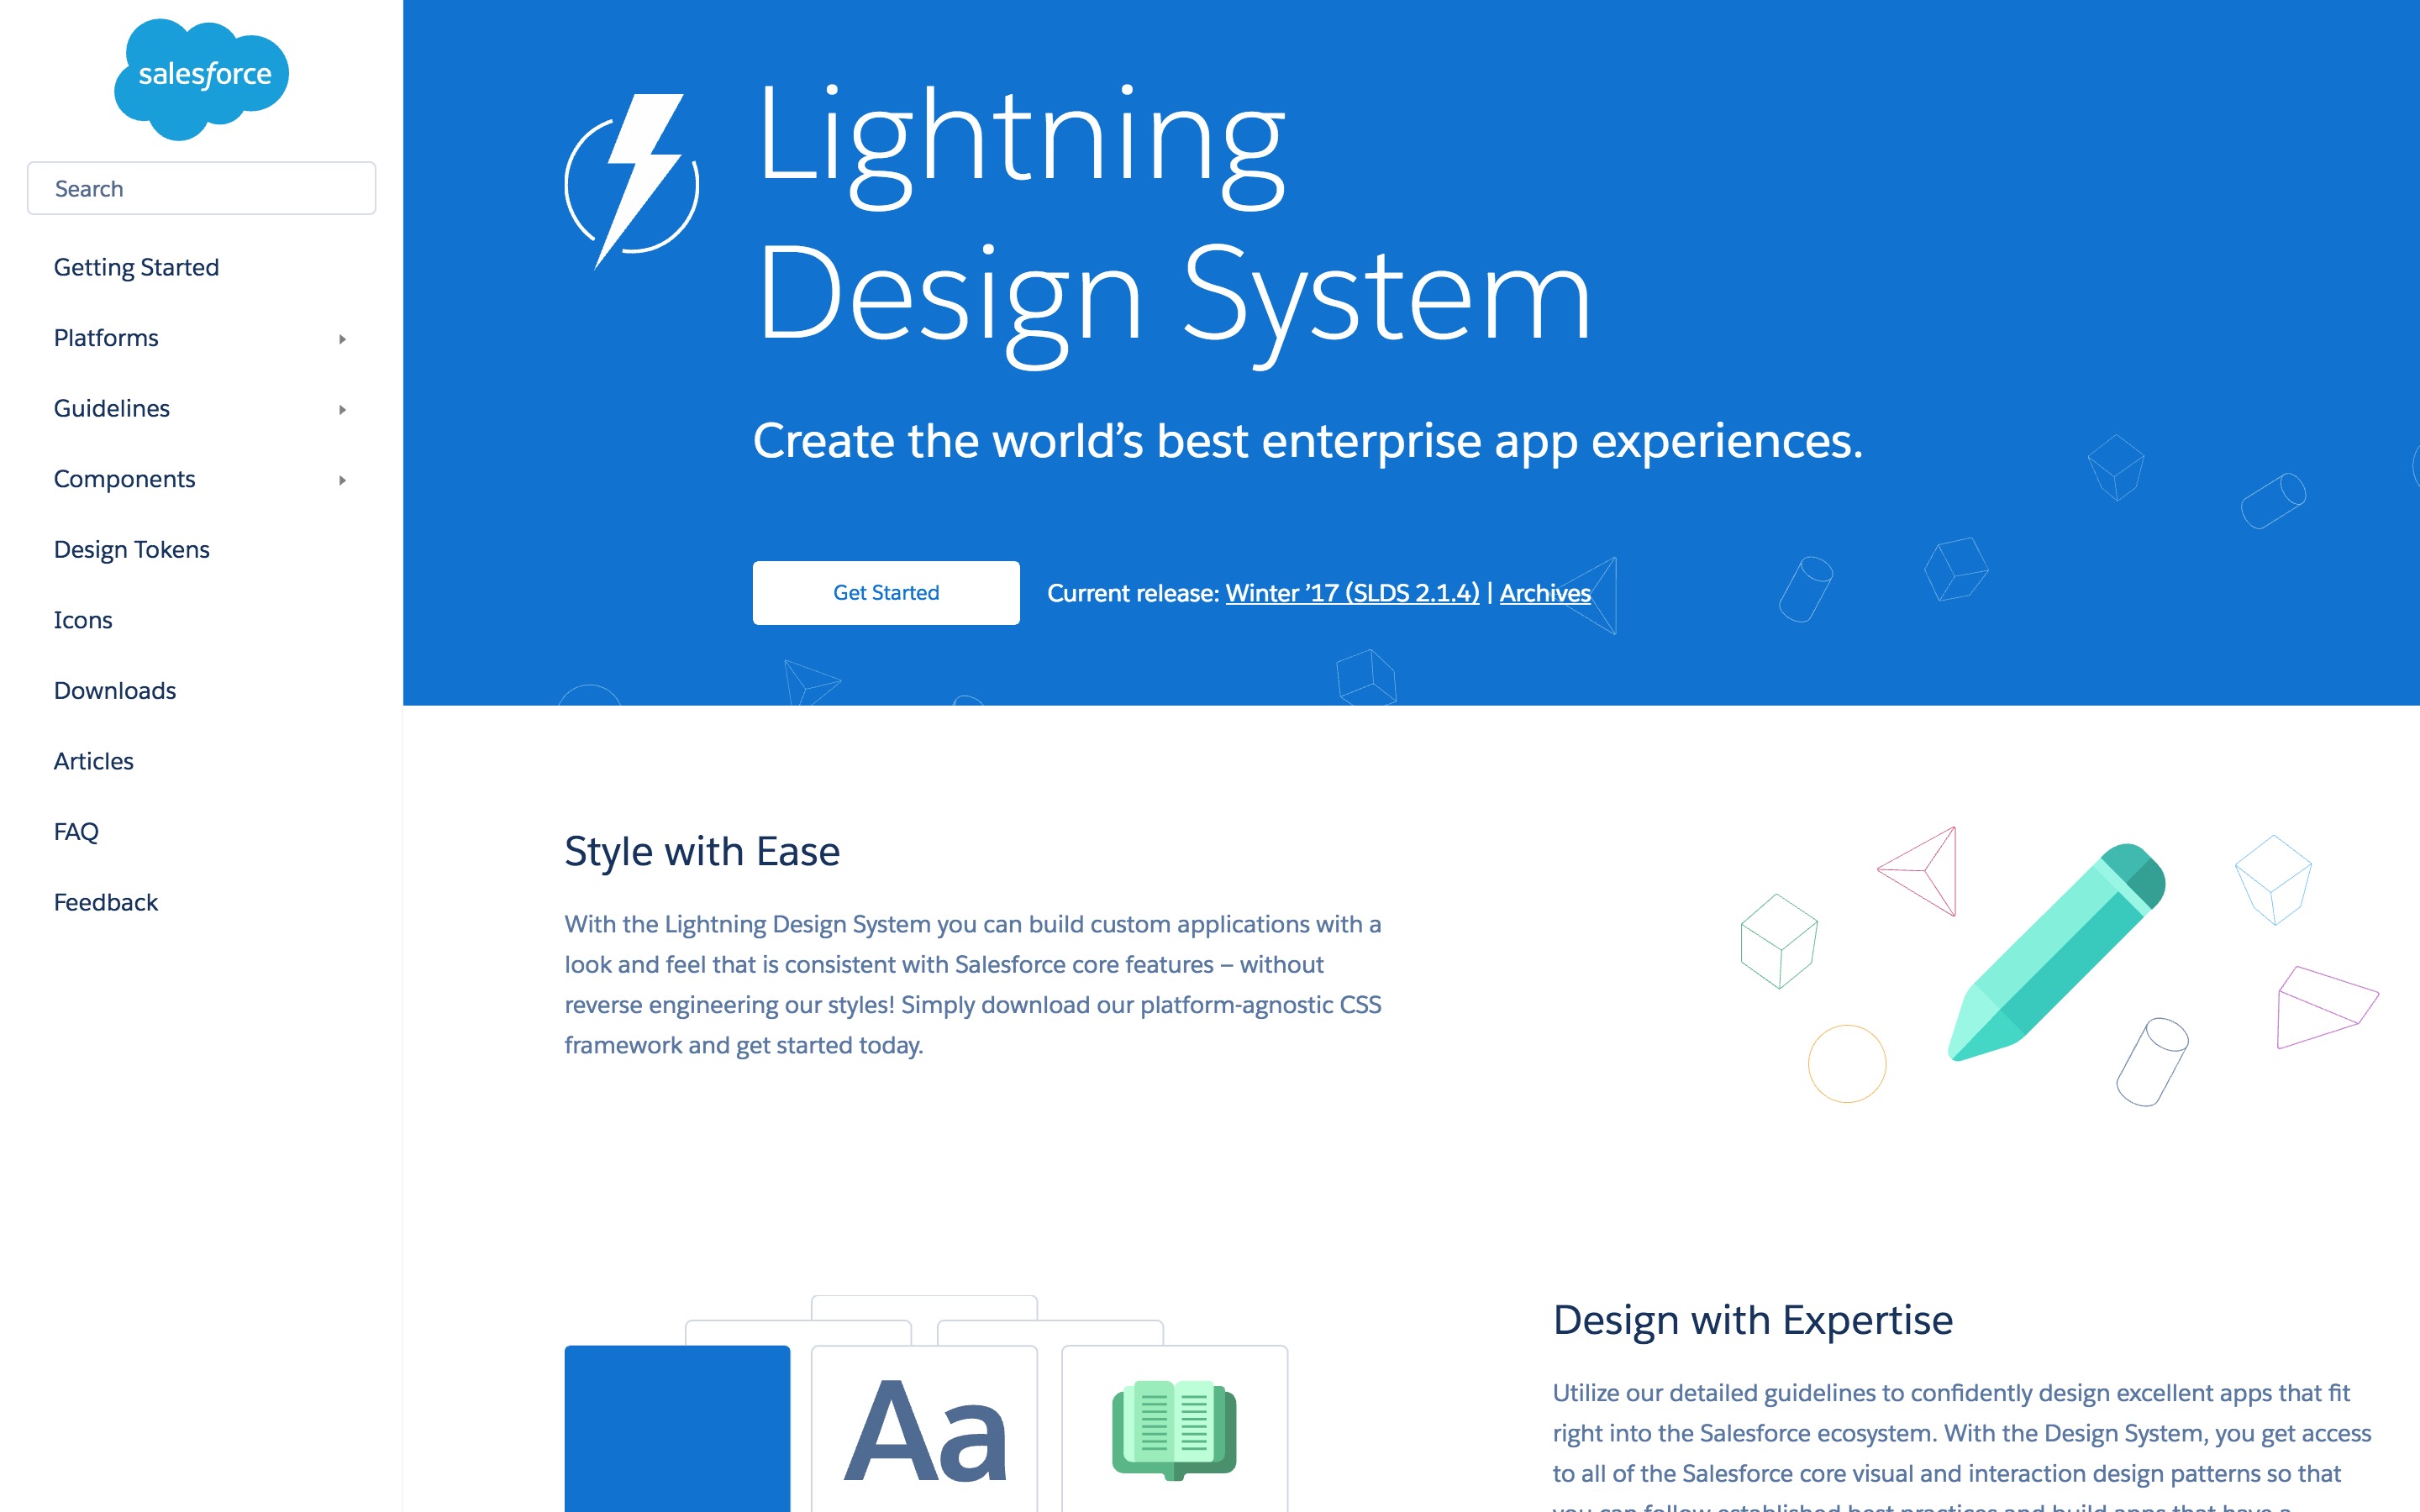 Salesforce Lightning Design System